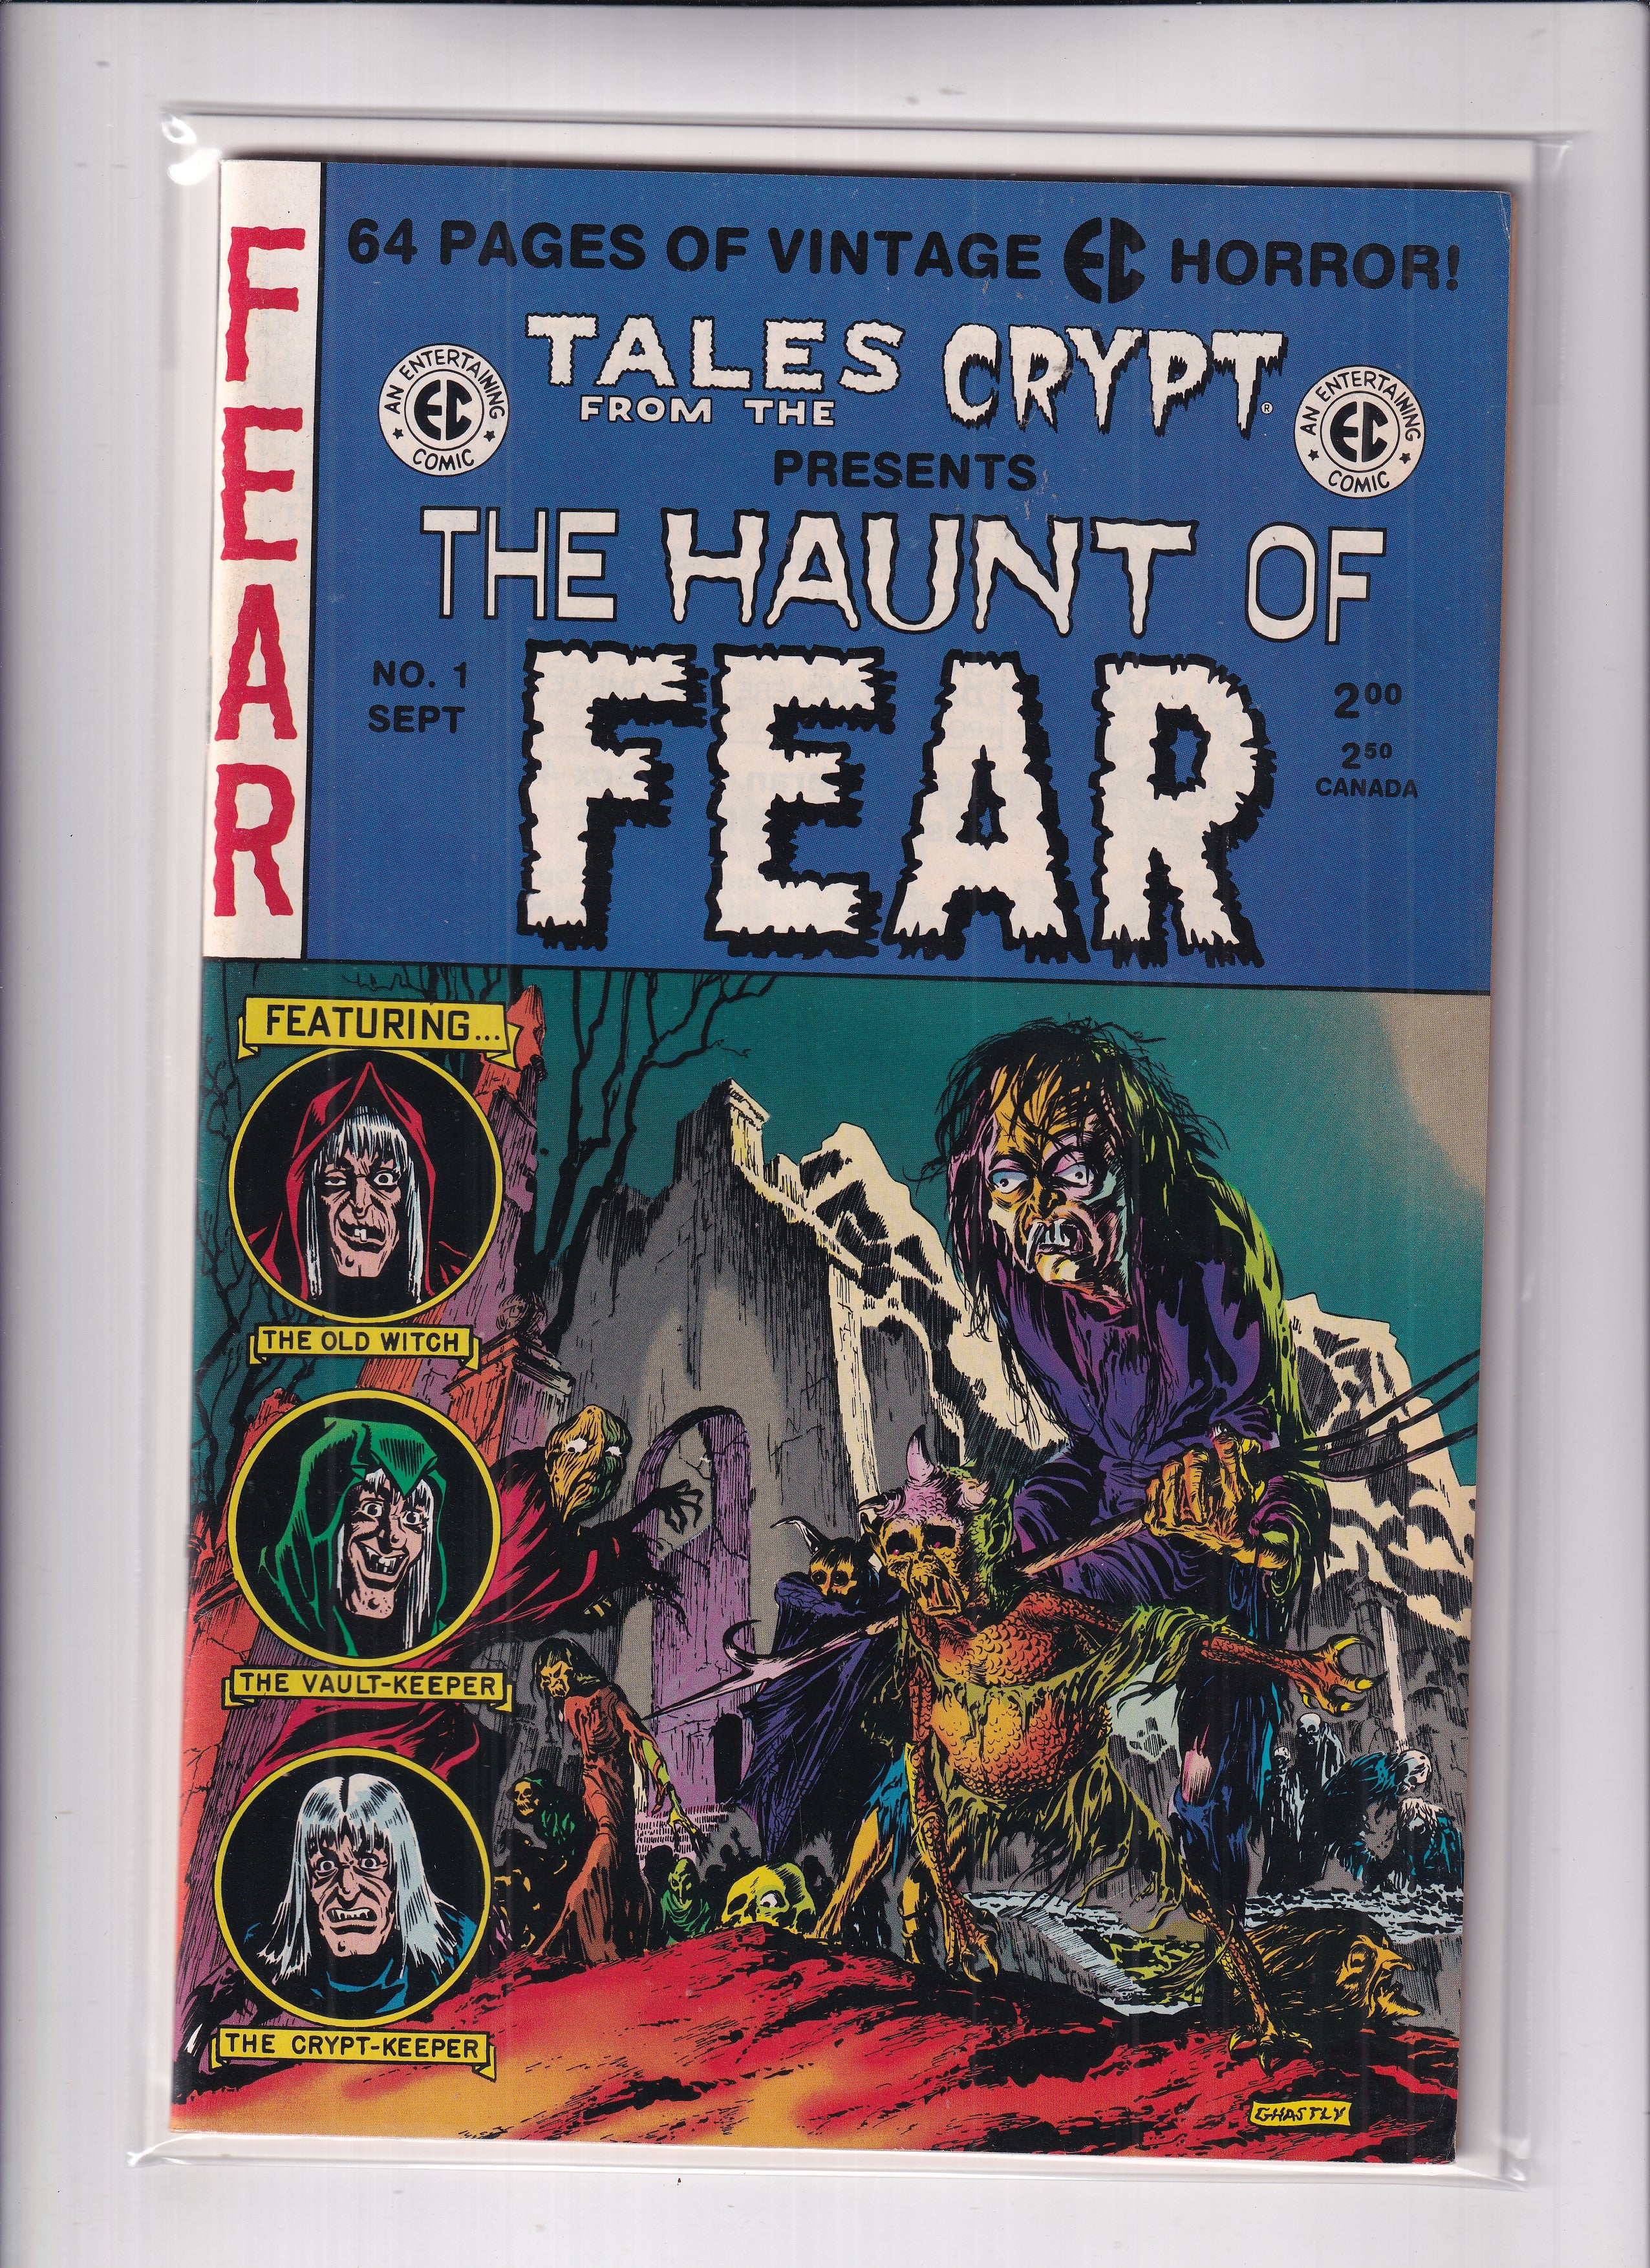 HAUNT OF FEAR #1 EC REPRINT - Slab City Comics 